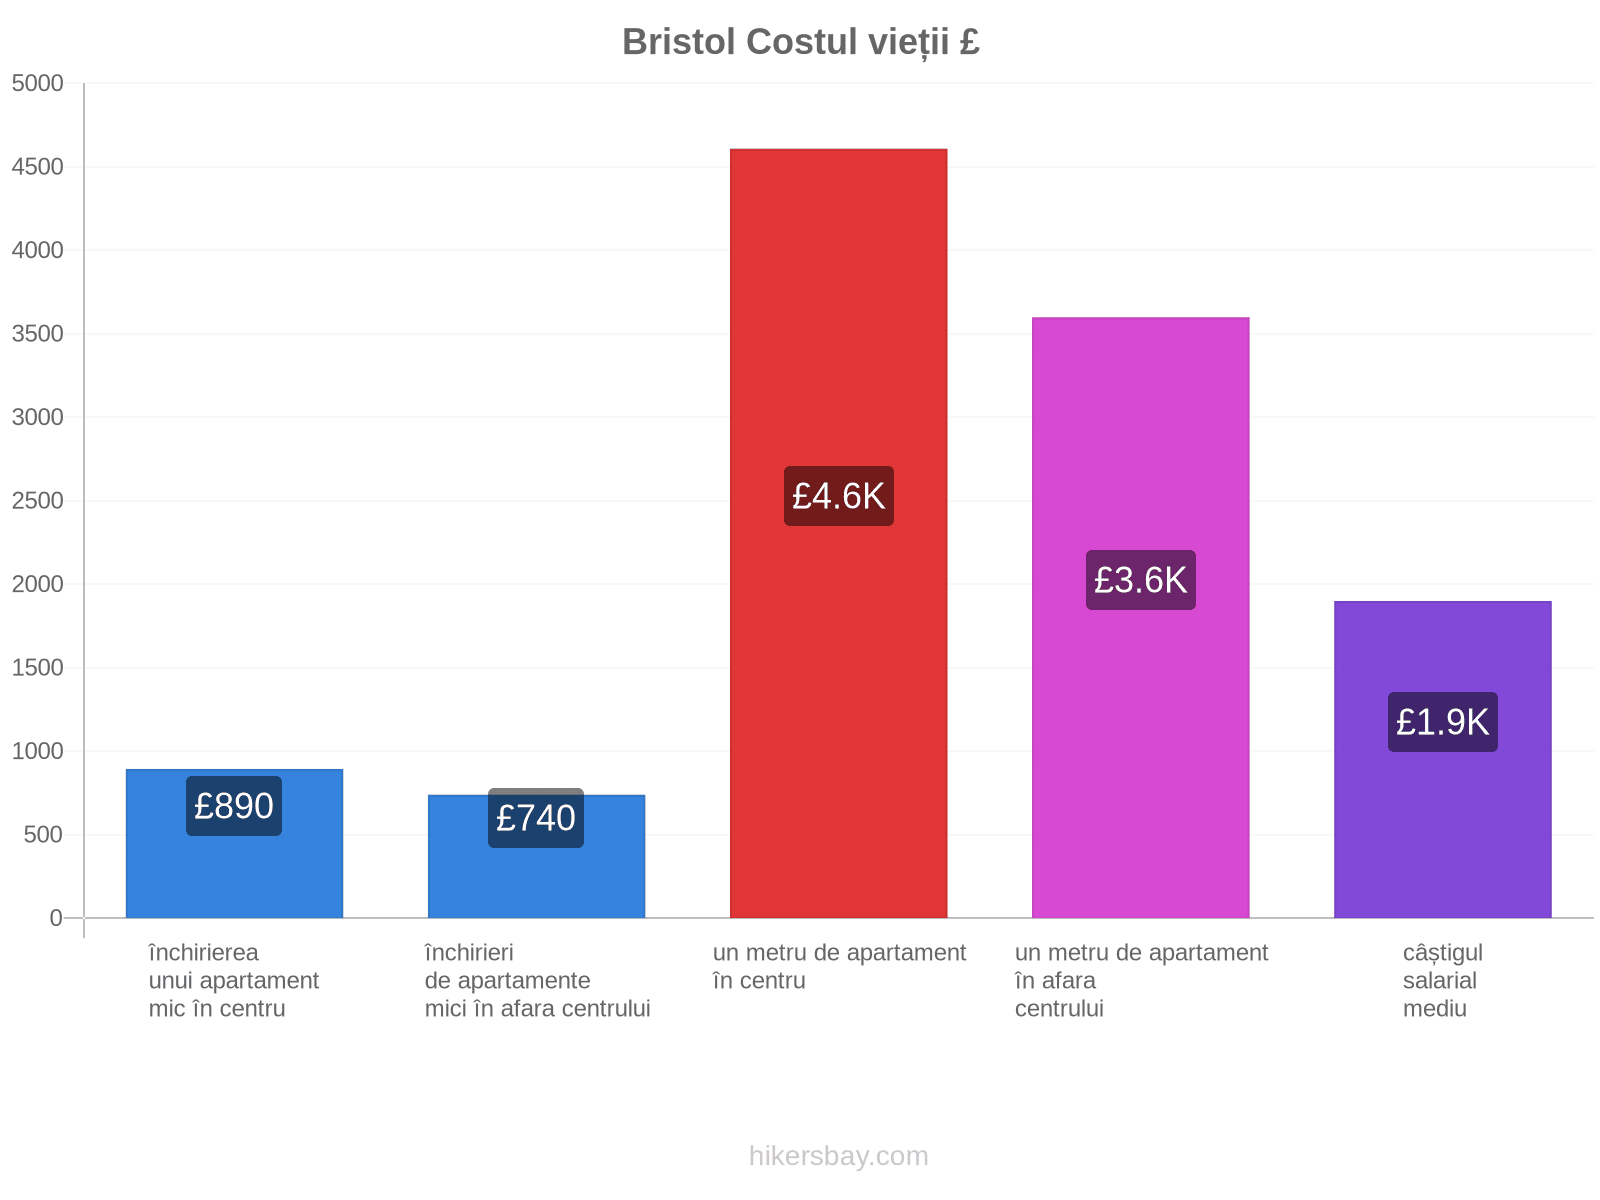 Bristol costul vieții hikersbay.com